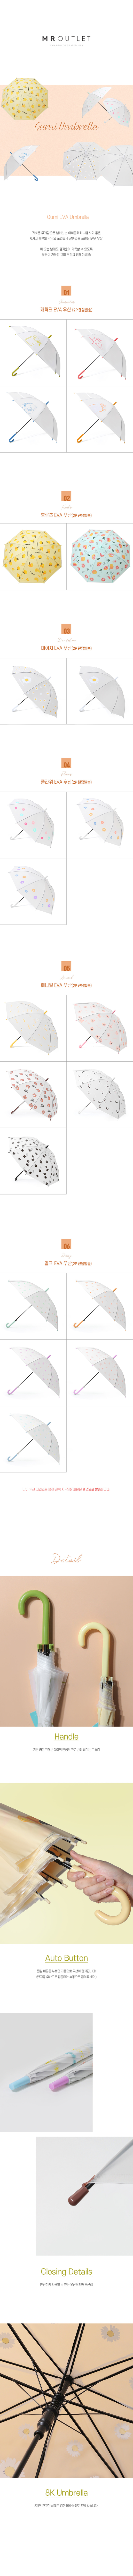 EVA_Umbrella_7.jpg